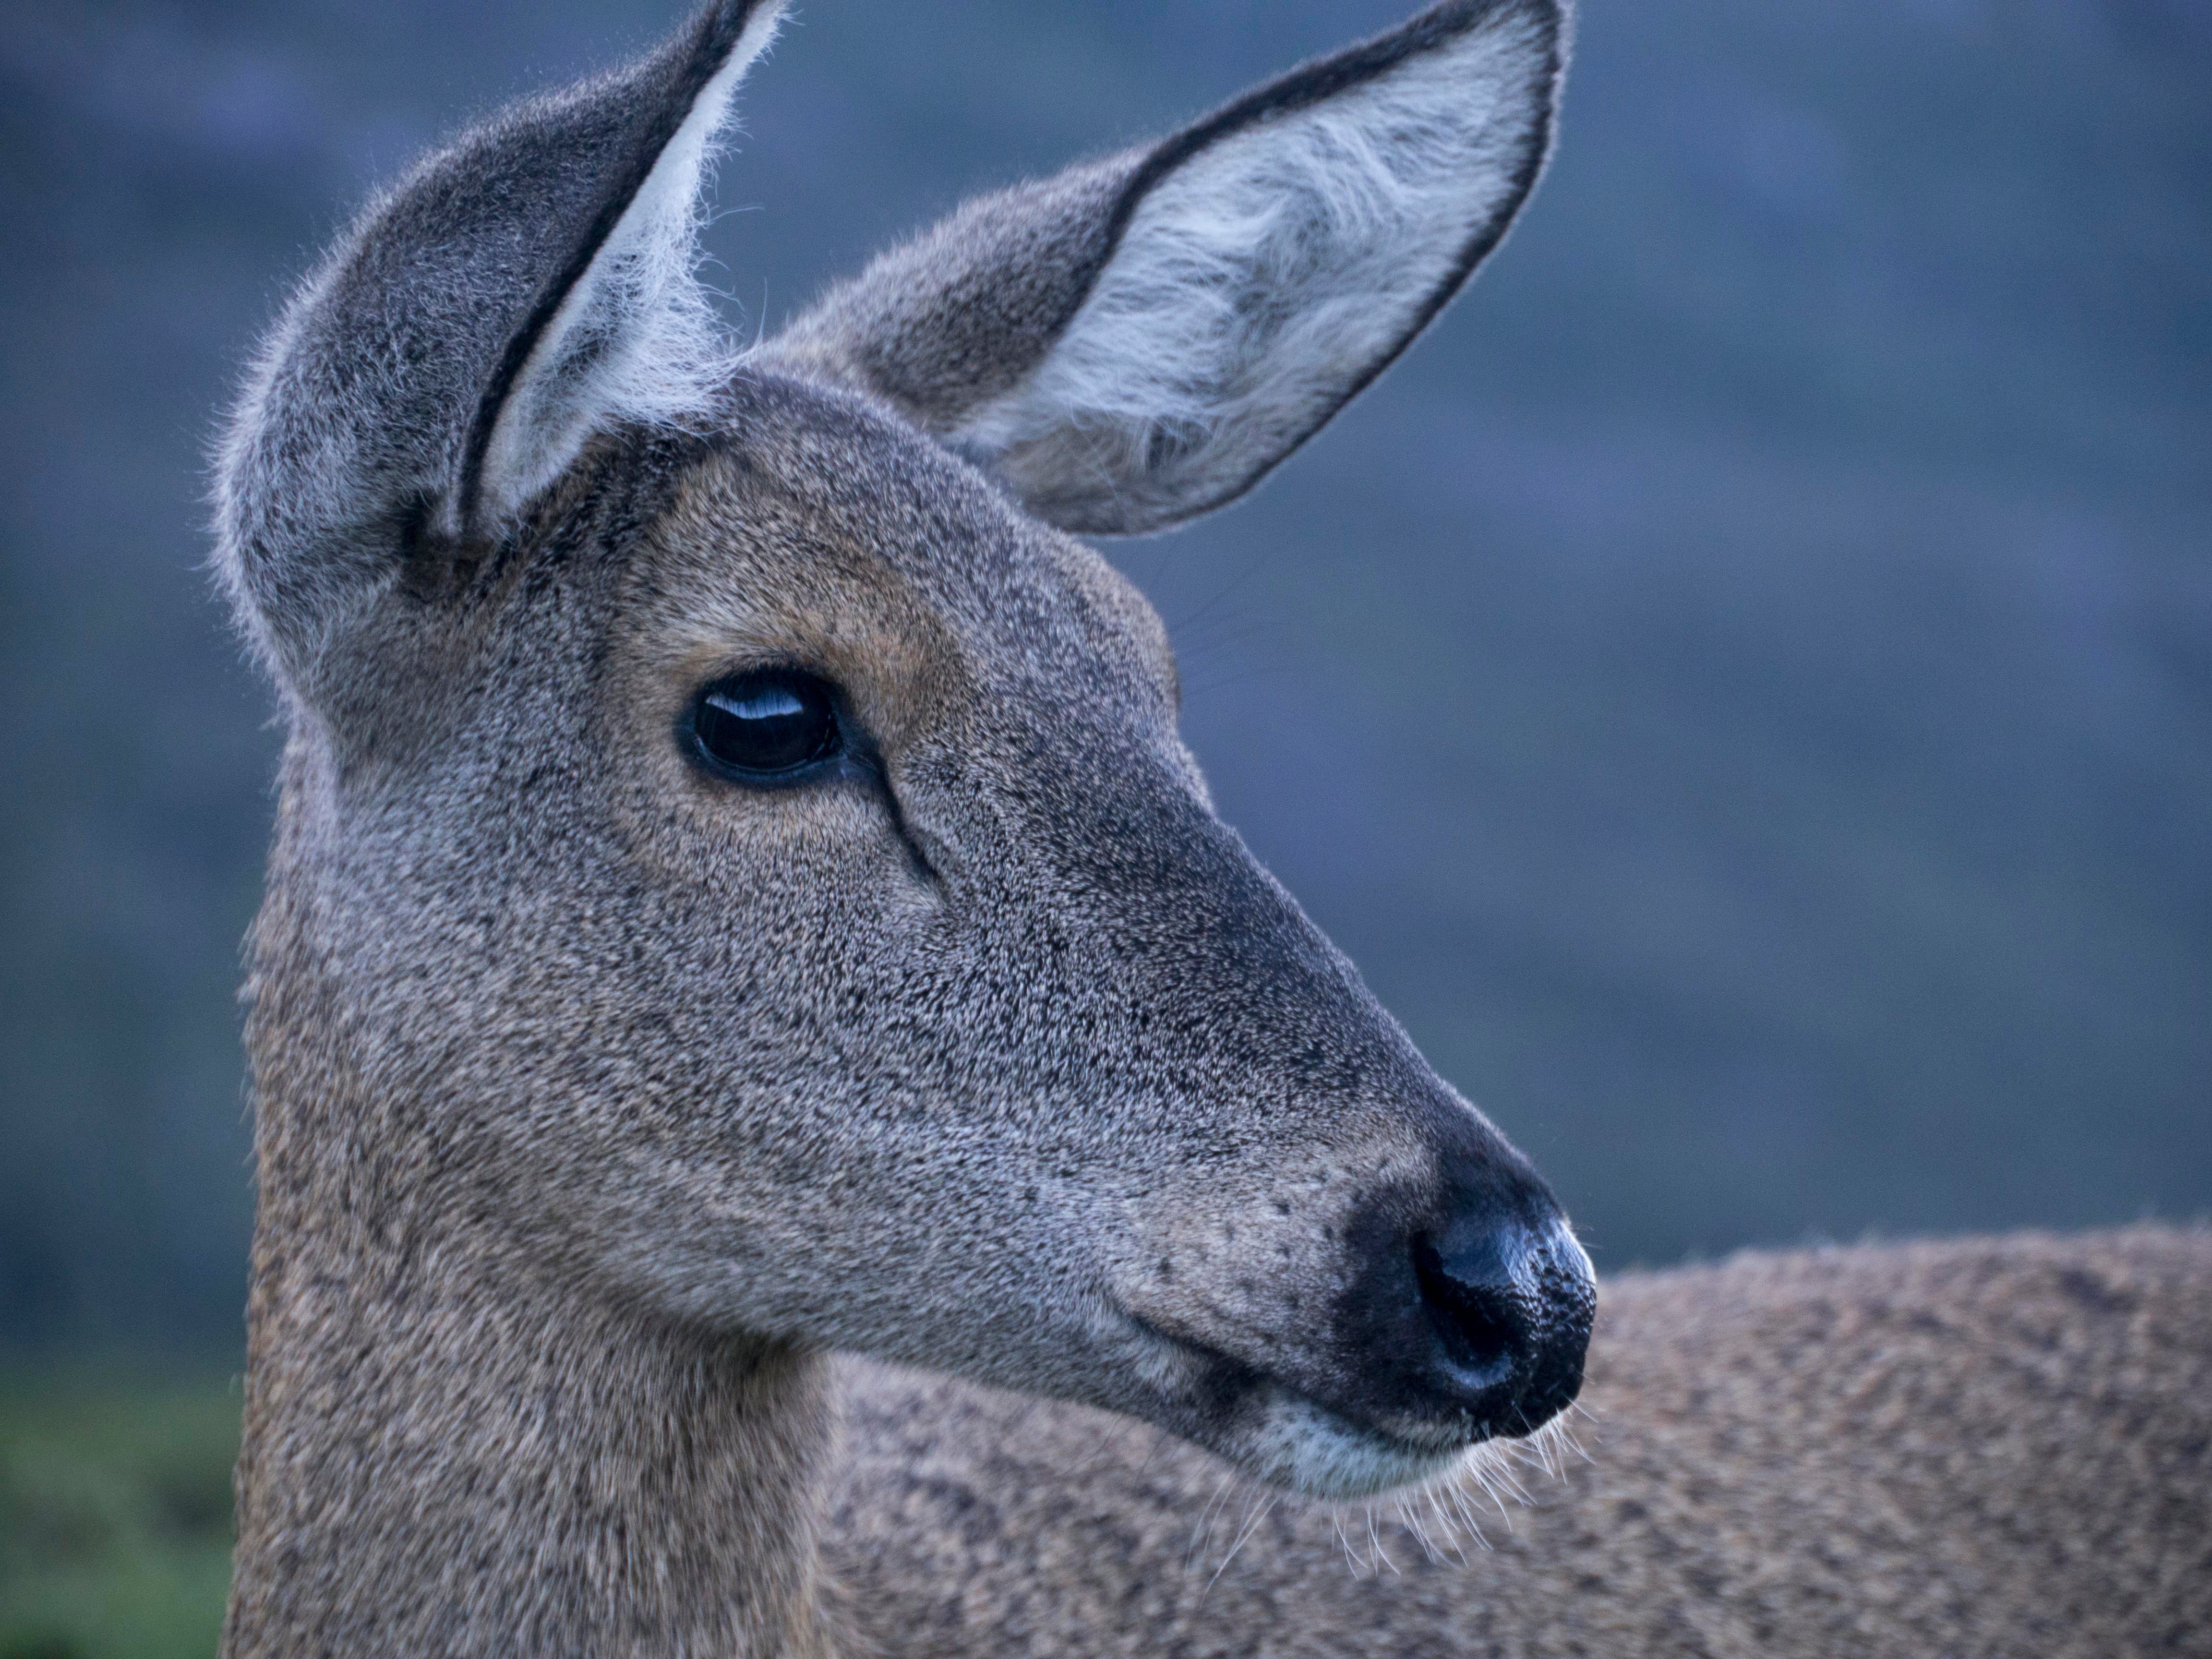 Huemul deer